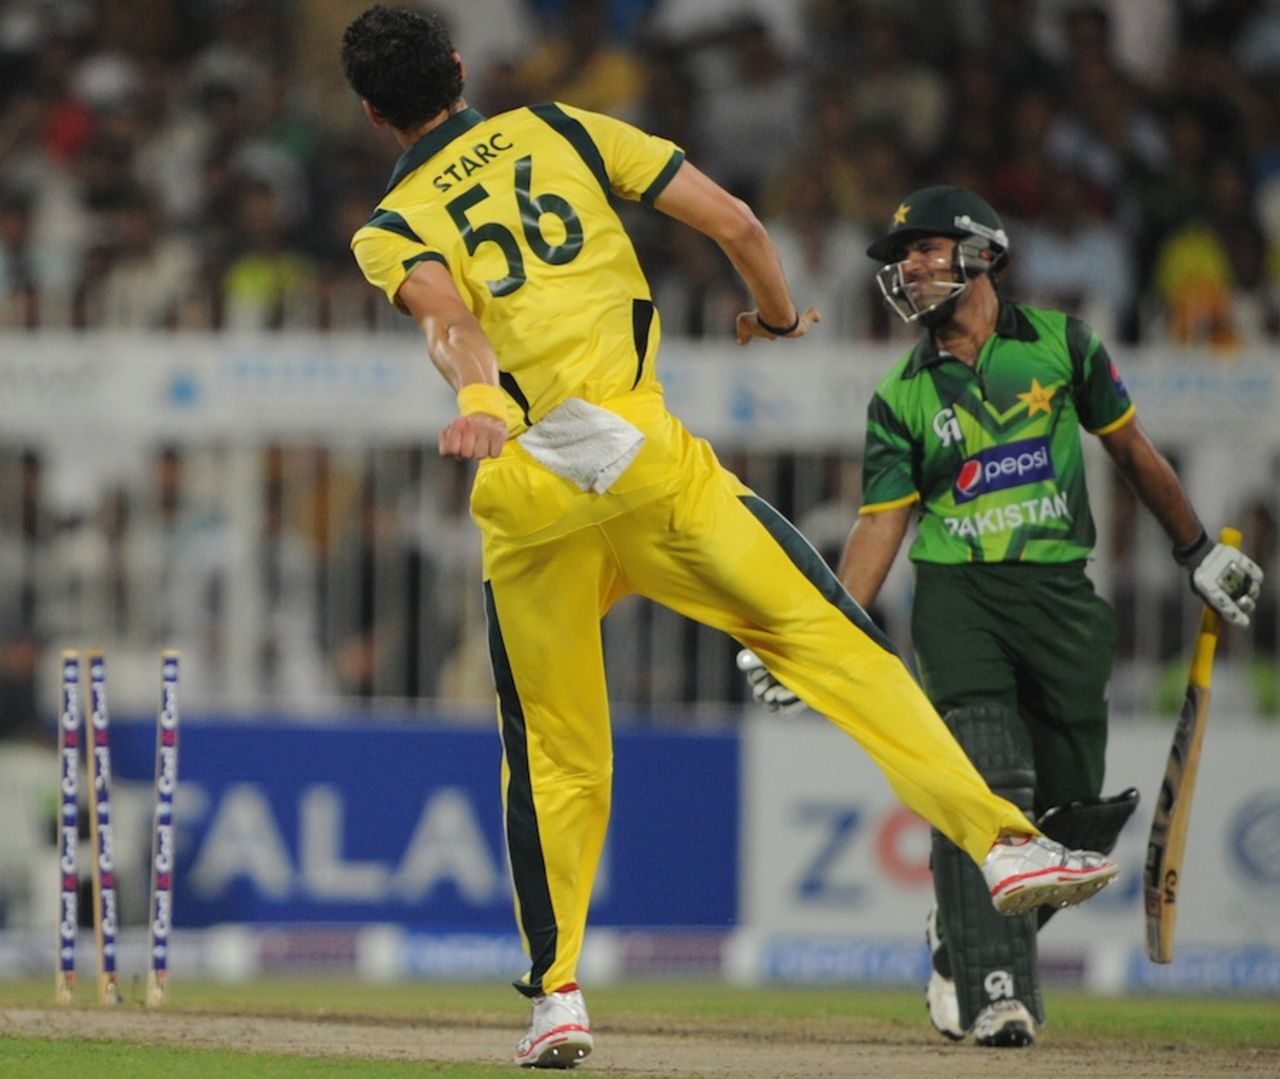 Mitchell Starc exults after taking Asad Shafiq's wicket, Pakistan v Australia, 1st ODI, Sharjah, August 28, 2012